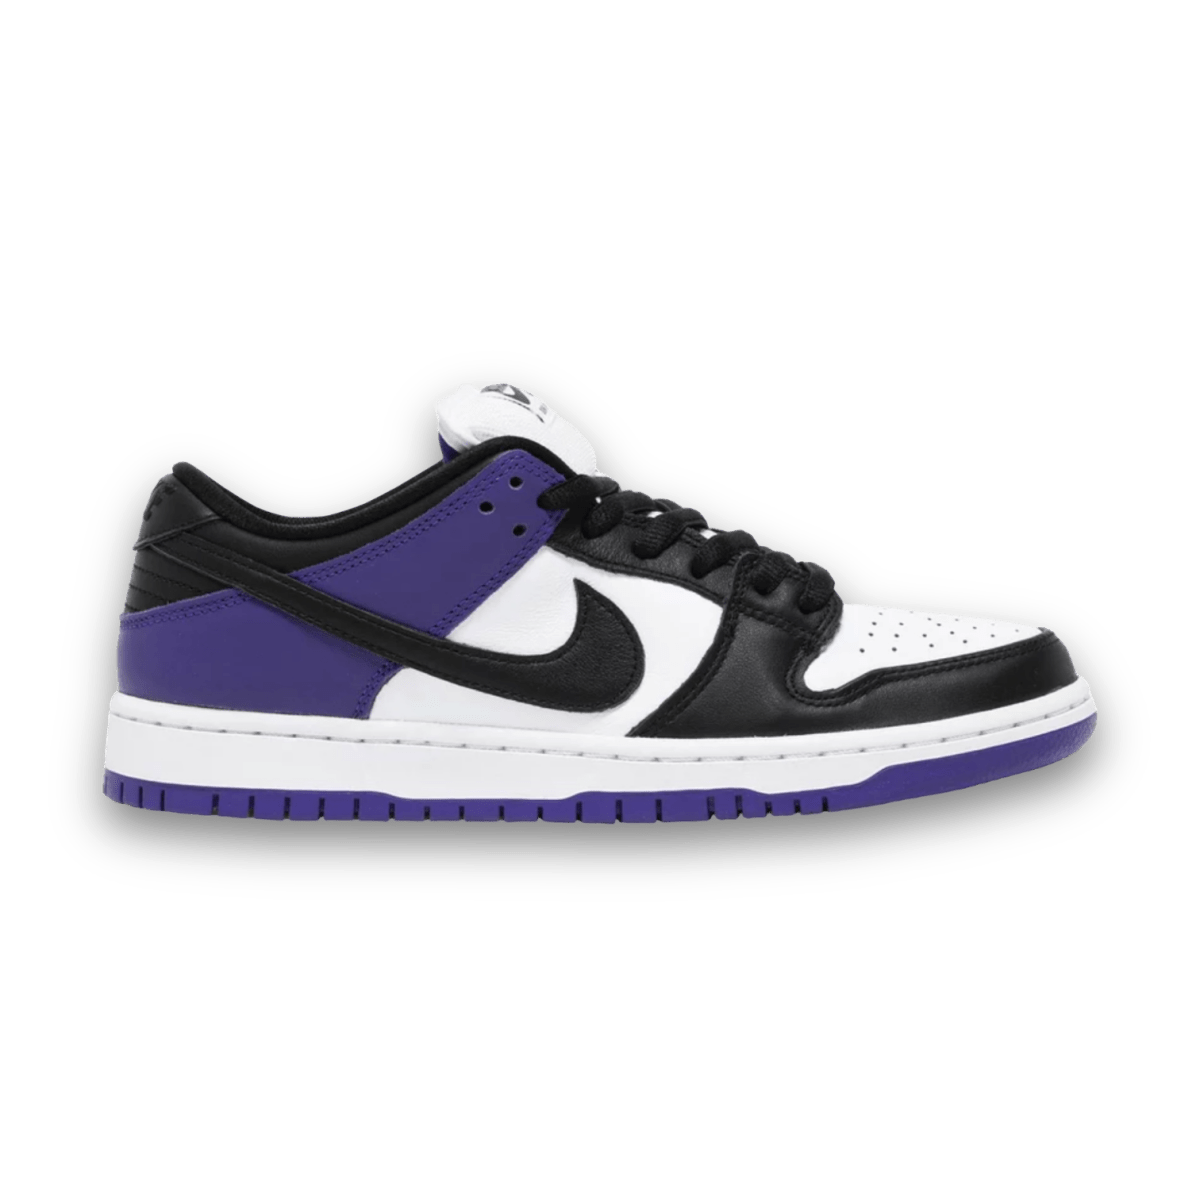 Dunk Low SB 'Court Purple' - Low Sneaker - Dunks - Jawns on Fire - sneakers